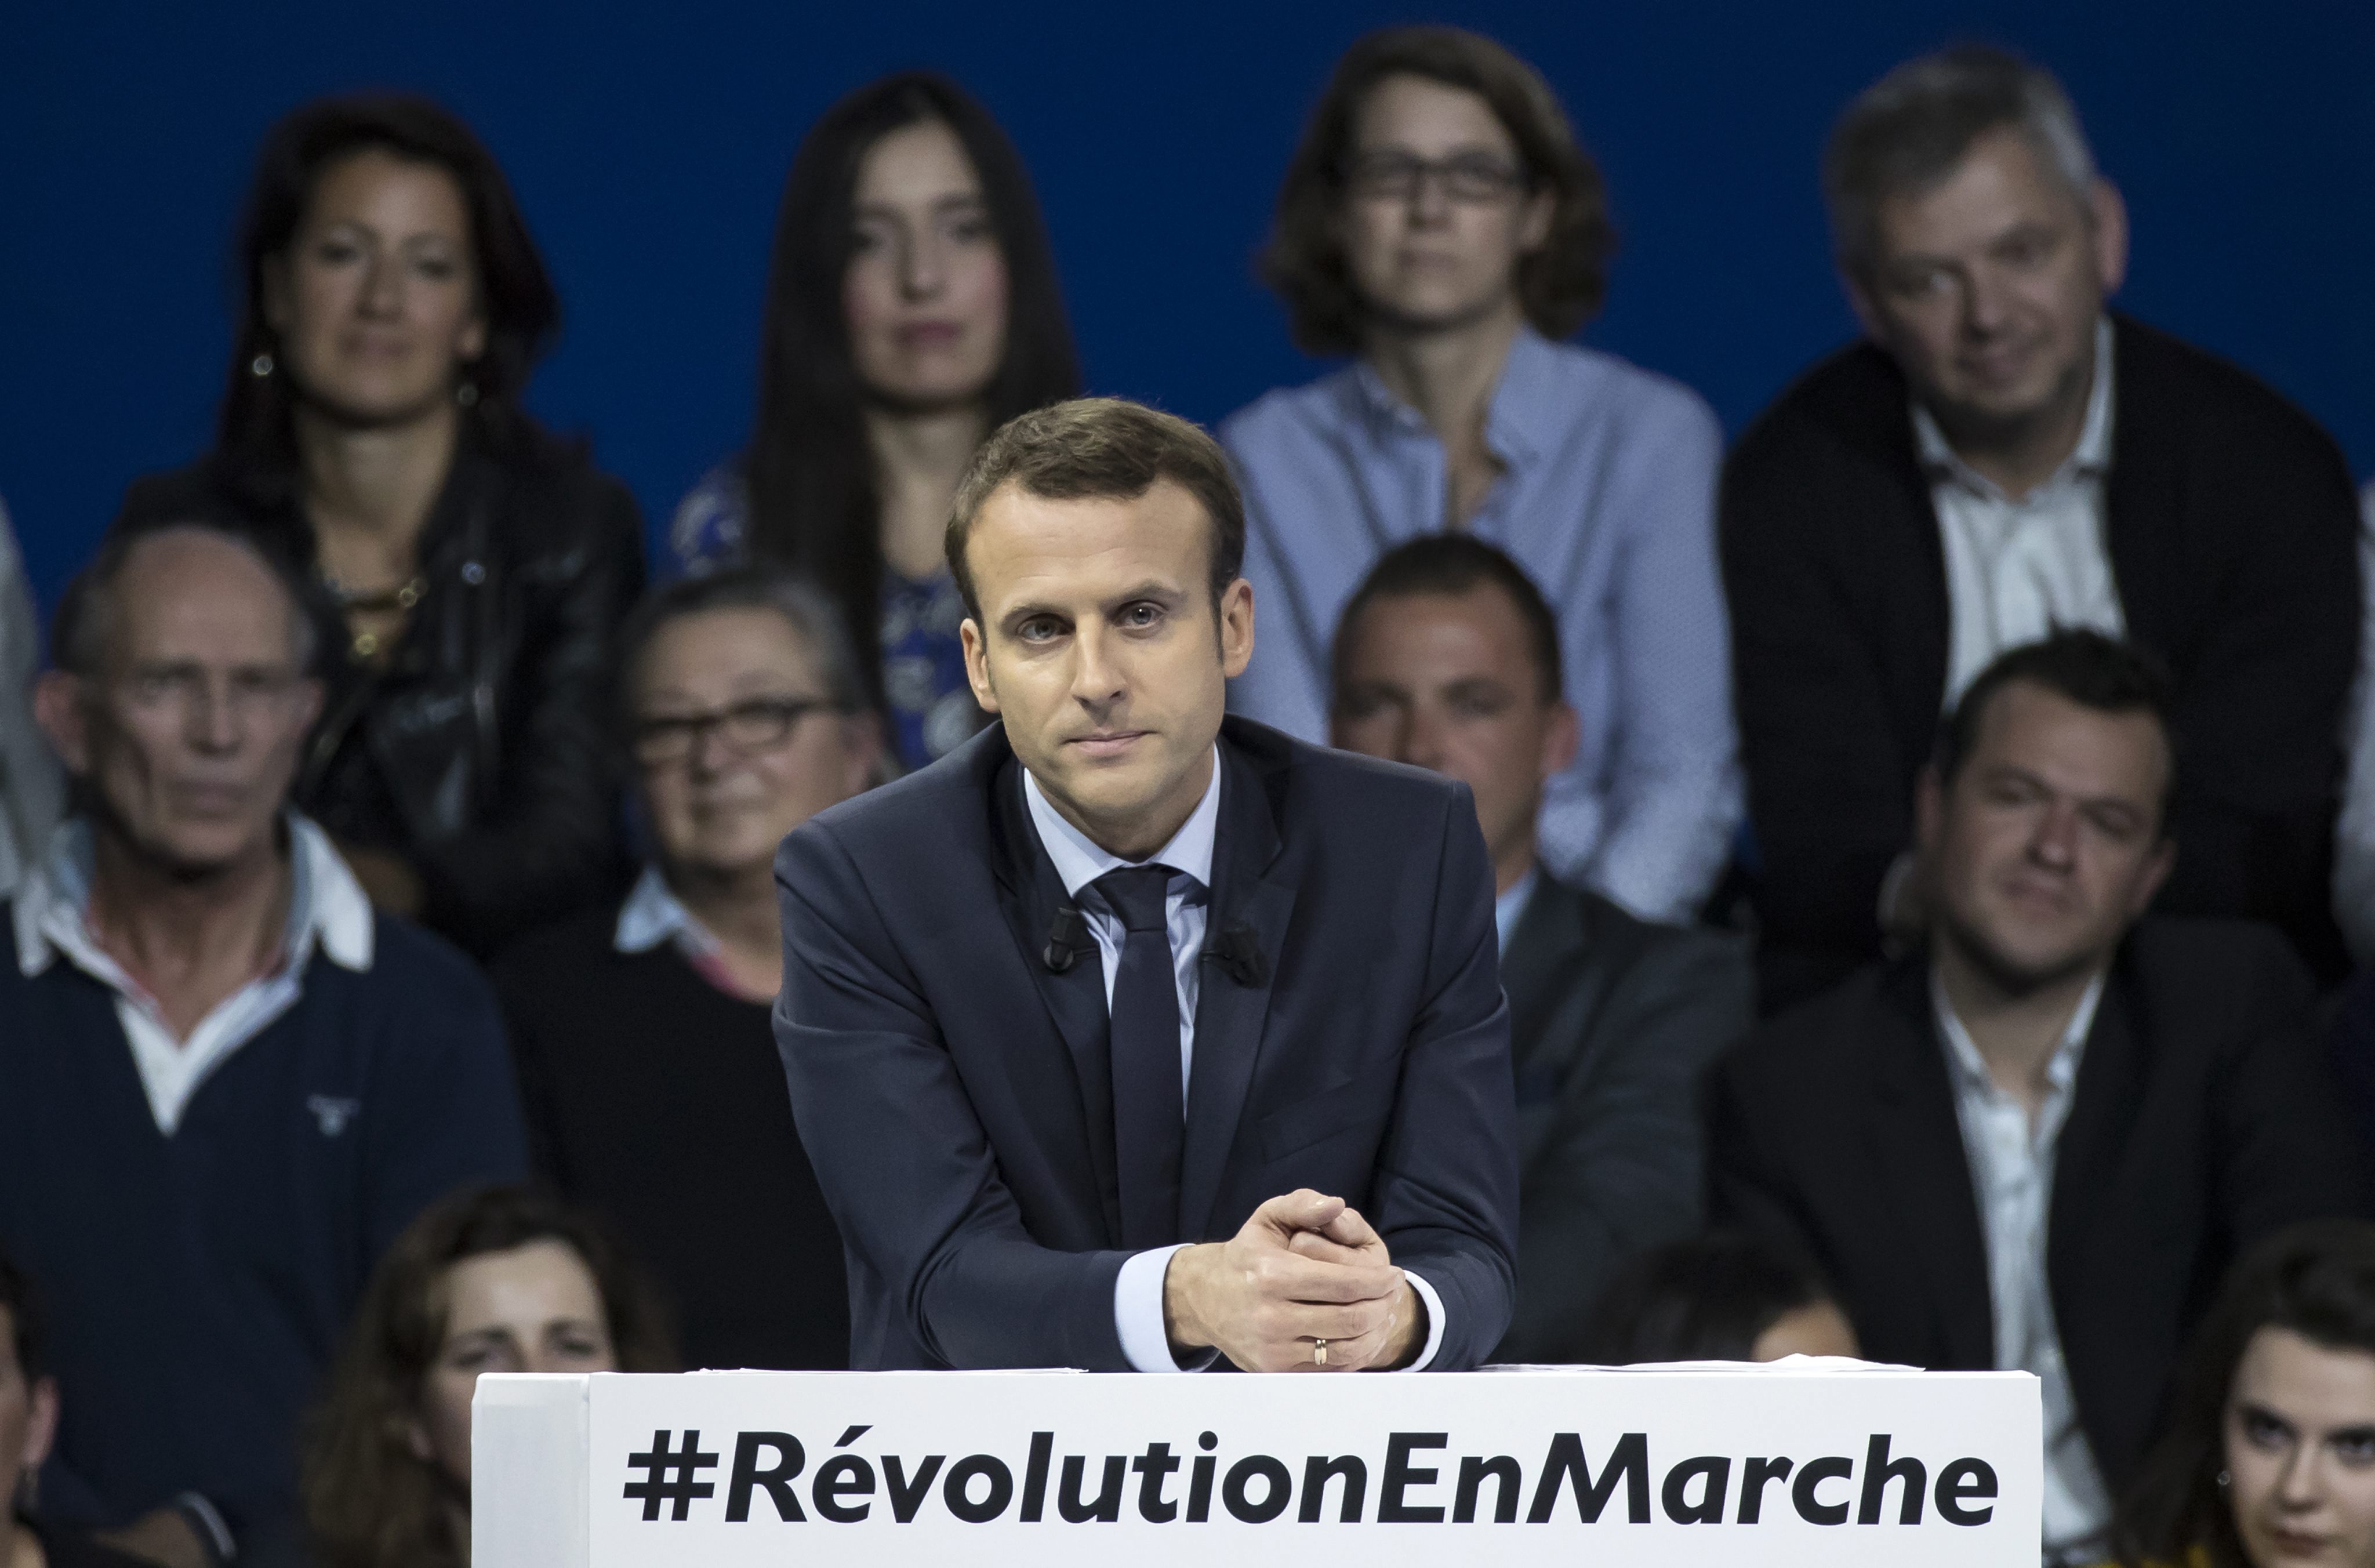 De euro is over tien jaar verdwenen als er geen flinke hervormingen komen. Dat zegt Emmanuel Macron, de voormalige Franse minister van Economische Zaken die zich nu verkiesbaar heeft gesteld als presidentskandidaat. Volgens Macron profiteert Duitsland te veel van de euro ten koste van de zwakkere lidstaten.